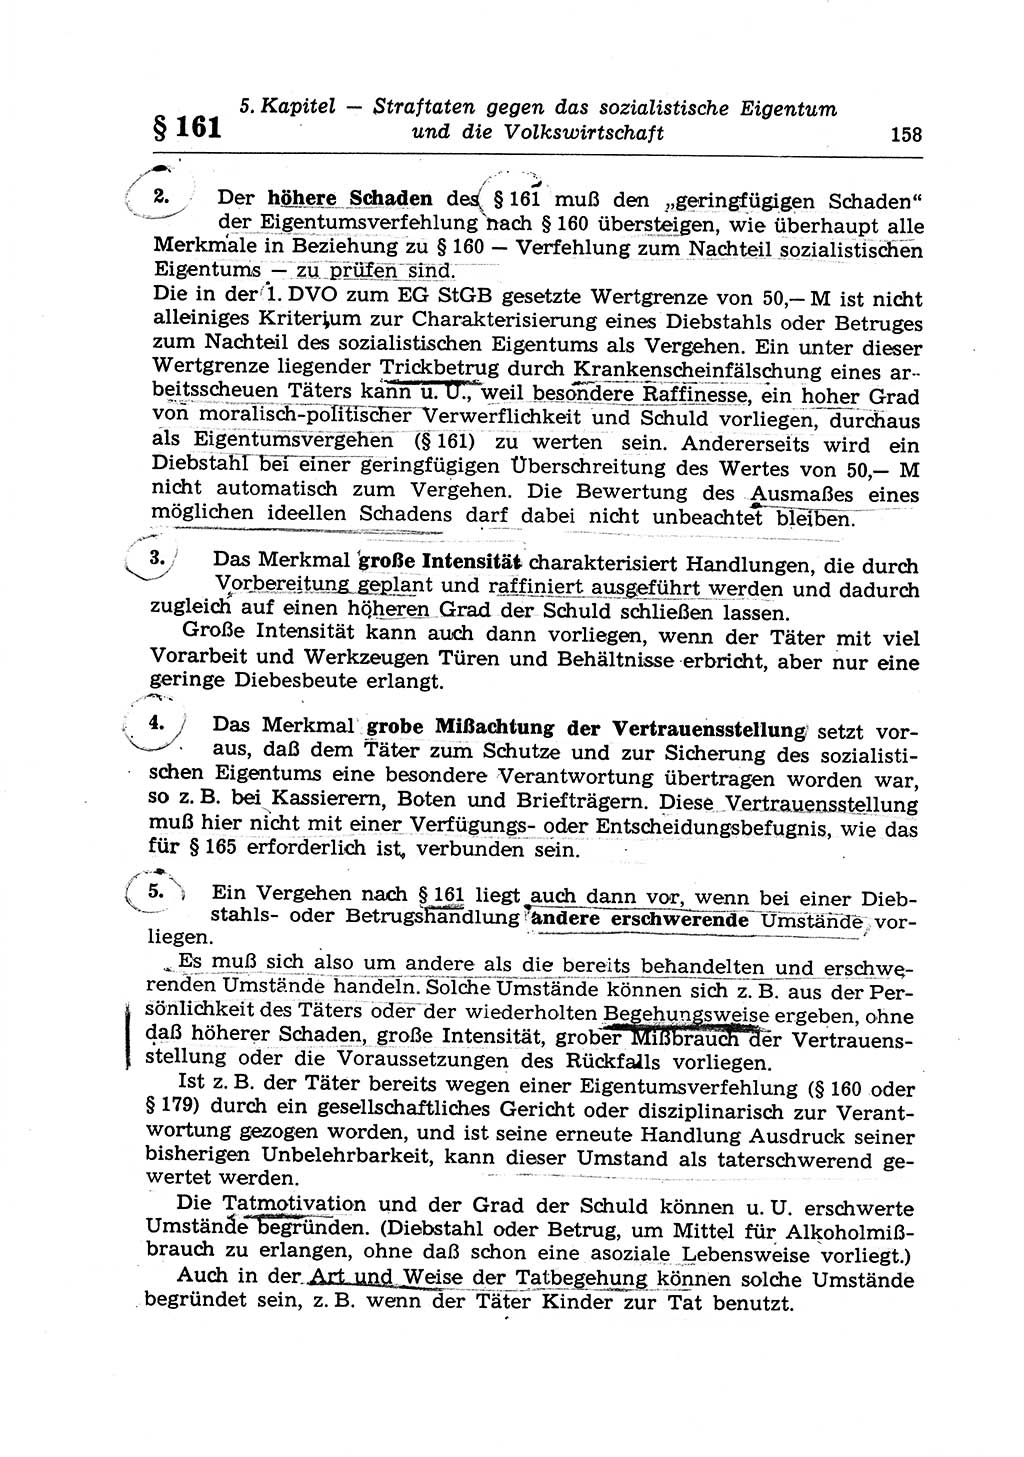 Strafrecht der Deutschen Demokratischen Republik (DDR), Lehrkommentar zum Strafgesetzbuch (StGB), Besonderer Teil 1970, Seite 158 (Strafr. DDR Lehrkomm. StGB BT 1970, S. 158)